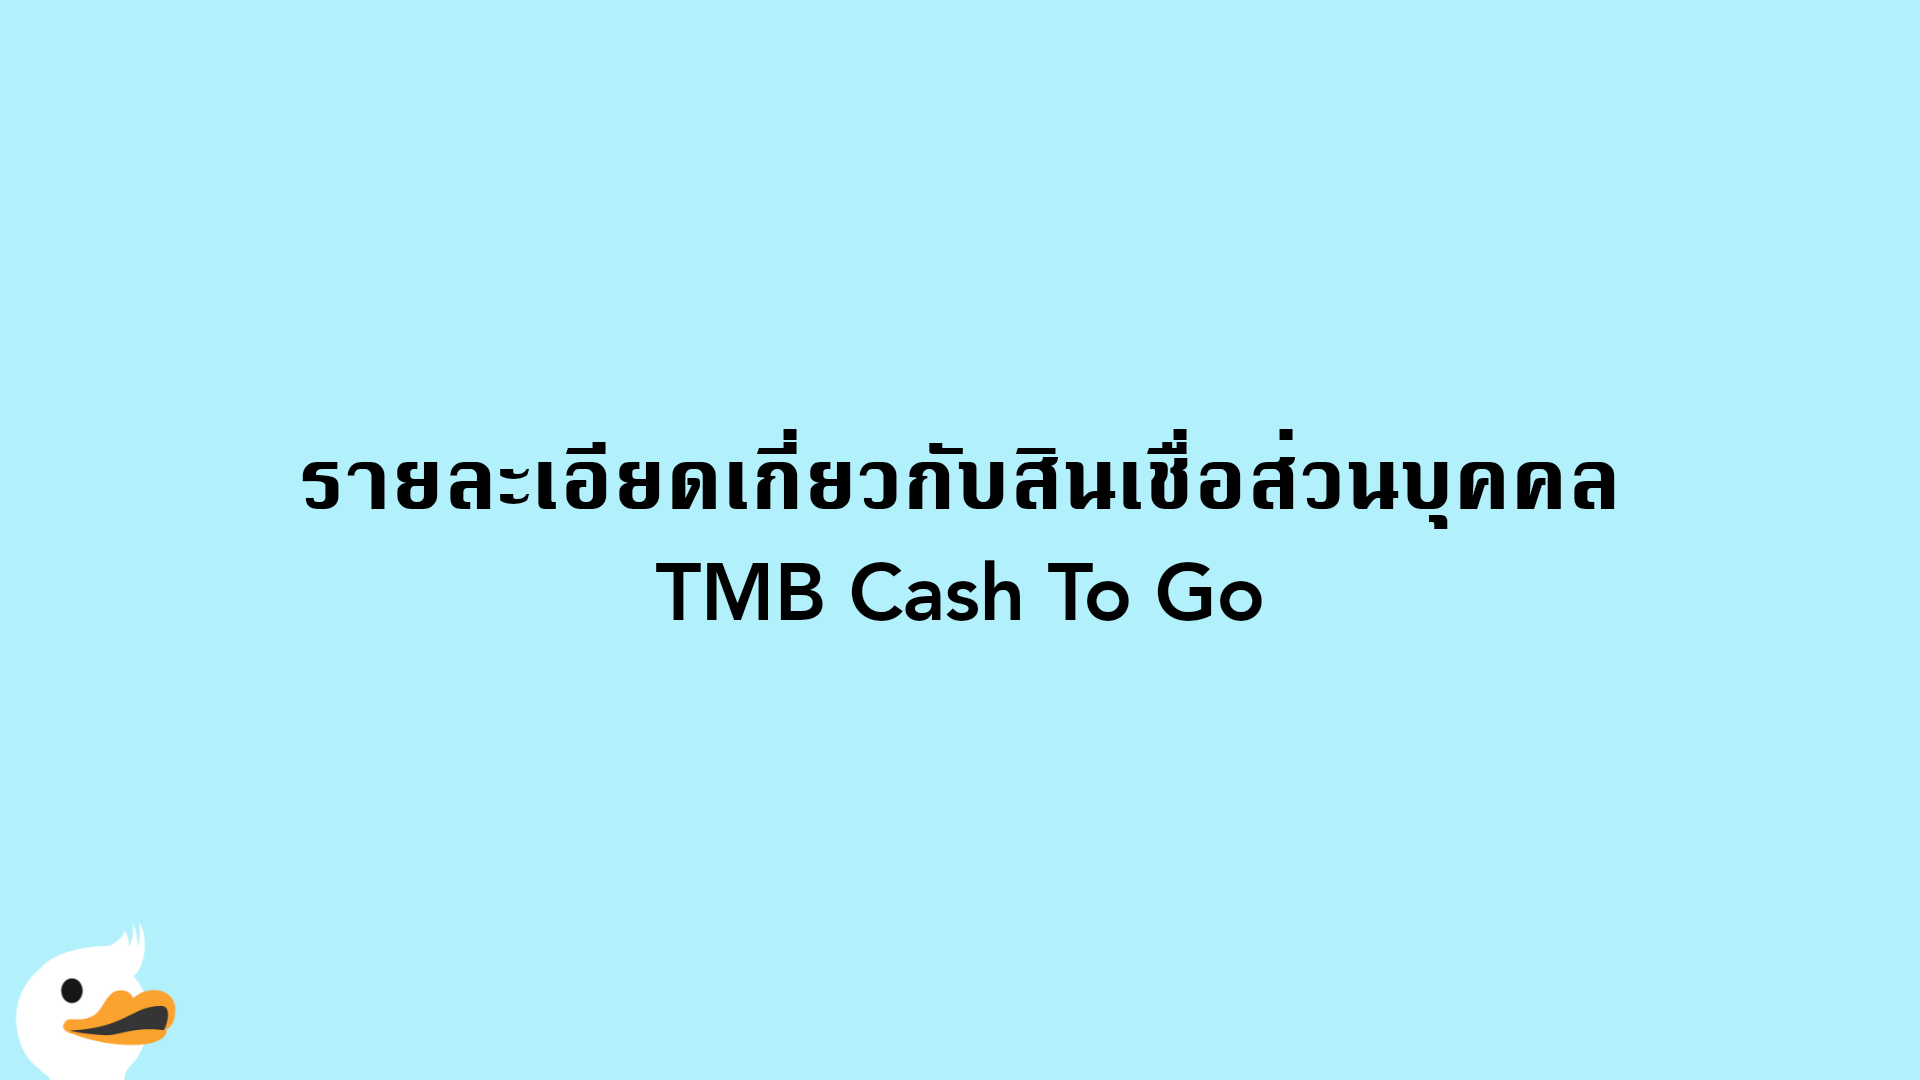 รายละเอียดเกี่ยวกับสินเชื่อส่วนบุคคล TMB Cash To Go